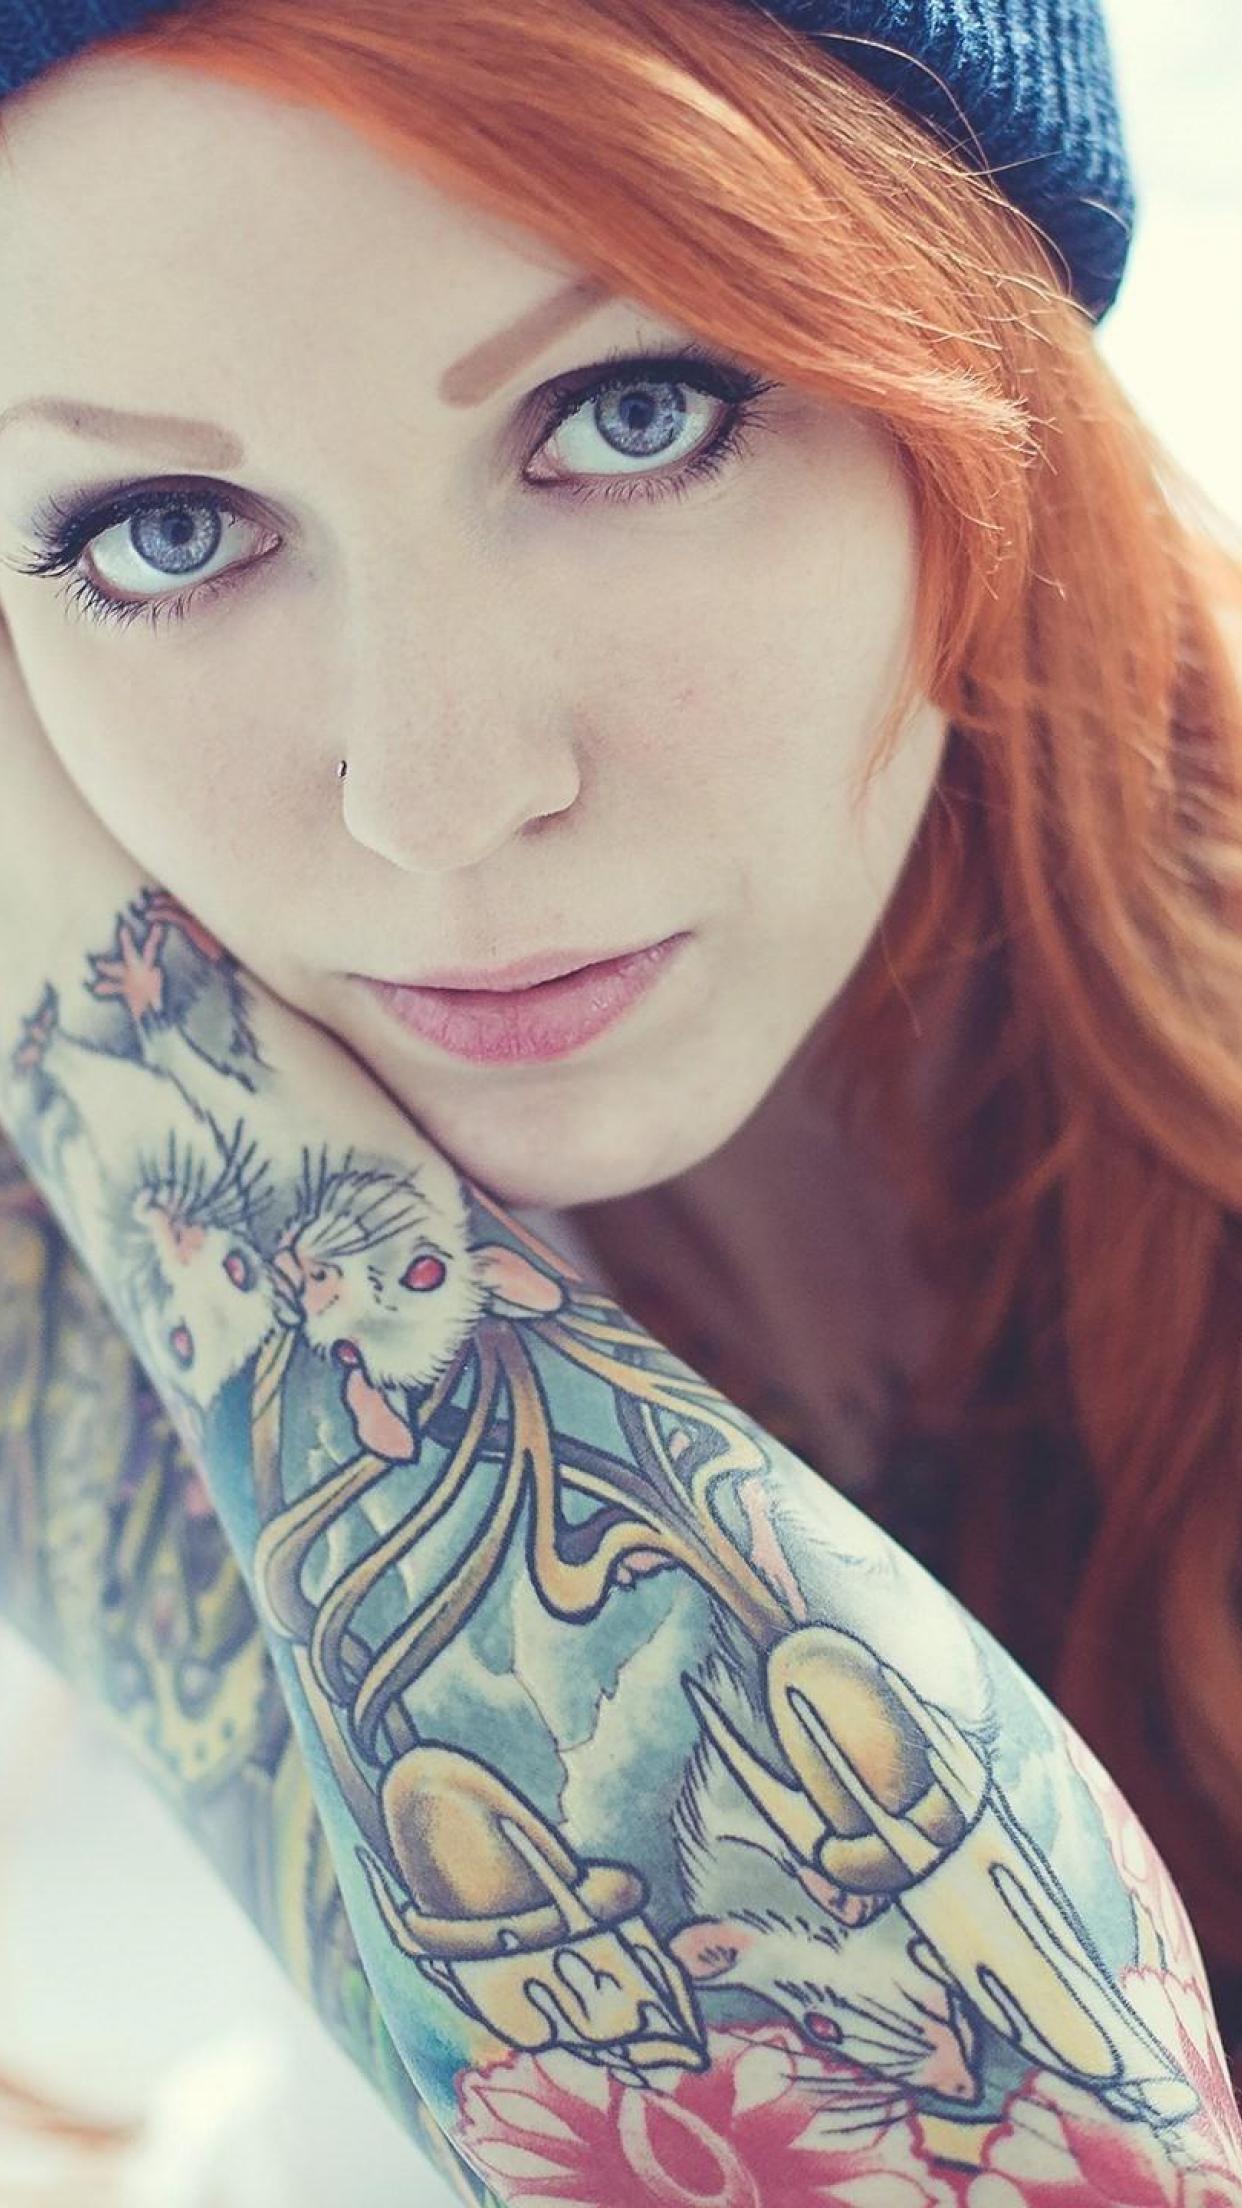 Girls Woman Tattoo Tattooed redhead HD Wallpapers, Desktop